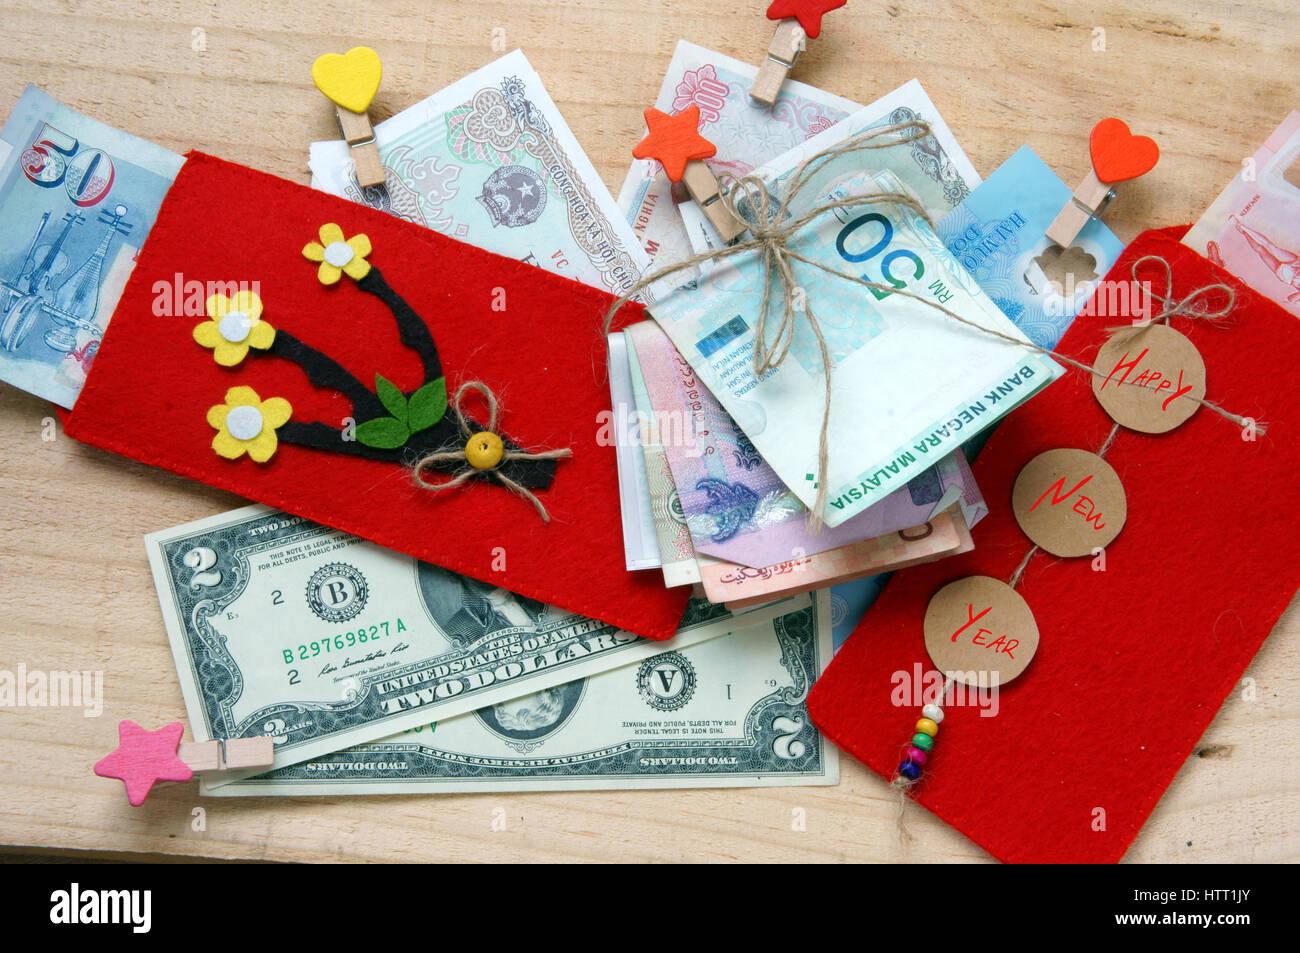 Gewohnheit, benutzerdefinierte Vietnamesen auf Tet ist Glück Geld, eine traditionelle Kultur Vietnam, Kind möchte jemand ein frohes neues Jahr, erhalten rotes Kuvert Stockfoto